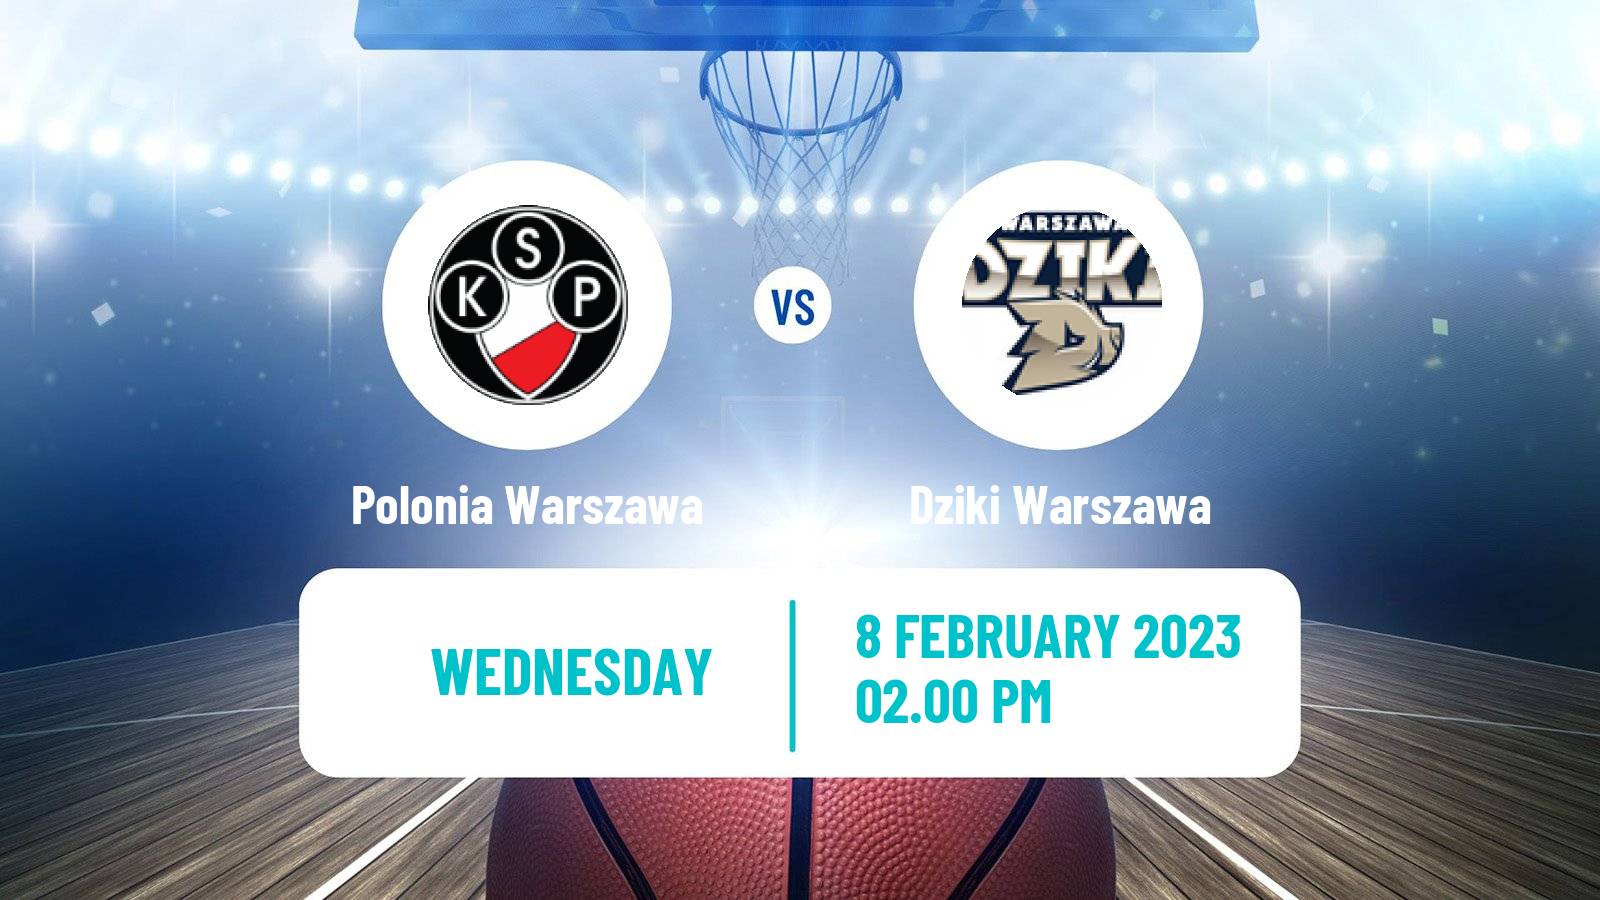 Basketball Polish 1 Liga Basketball Polonia Warszawa - Dziki Warszawa